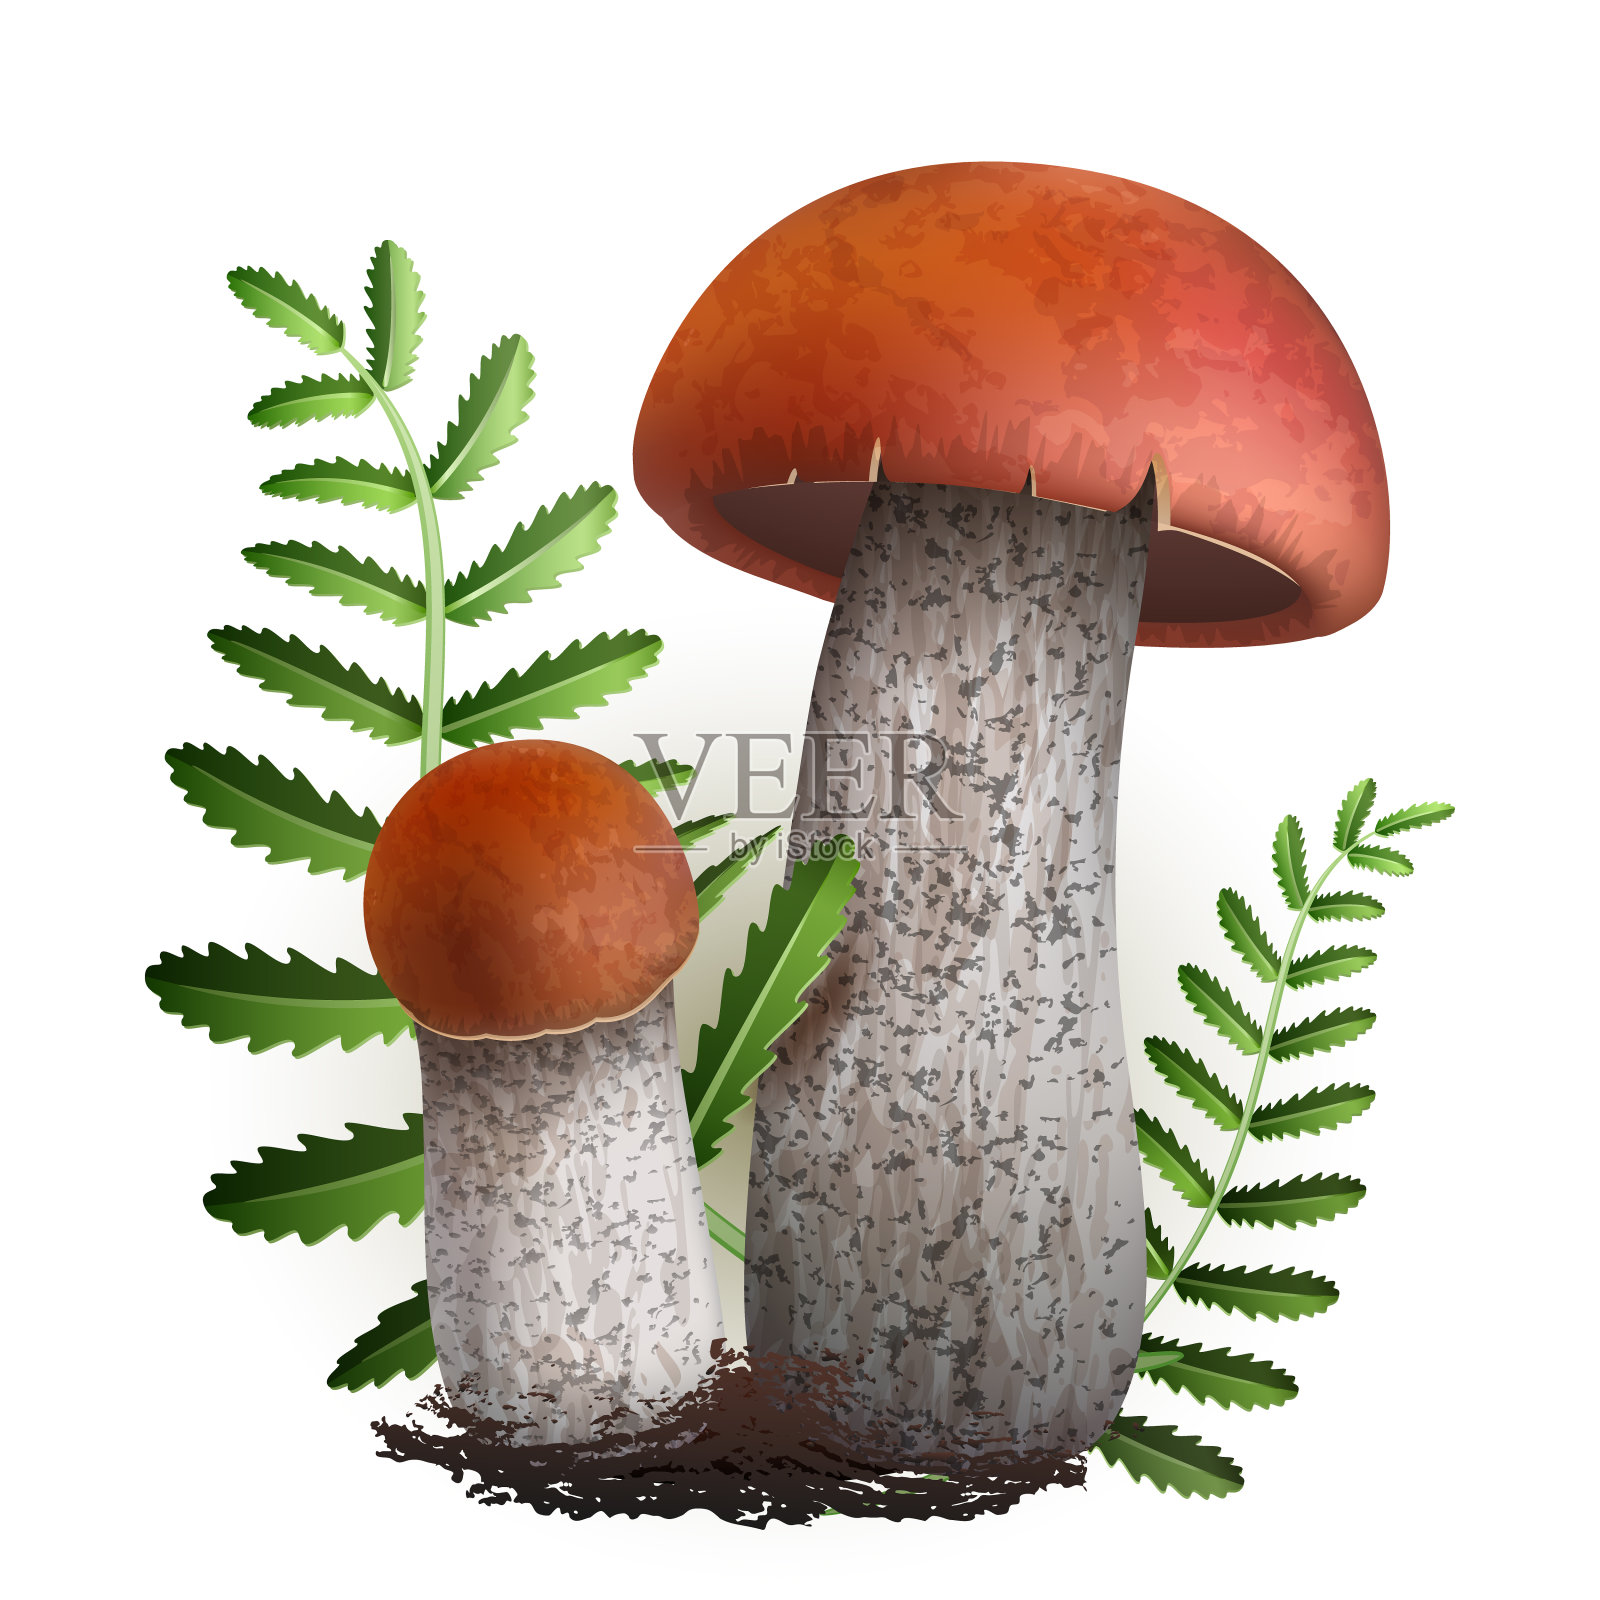 牛肝菌属菌类向量蘑菇插画图片素材